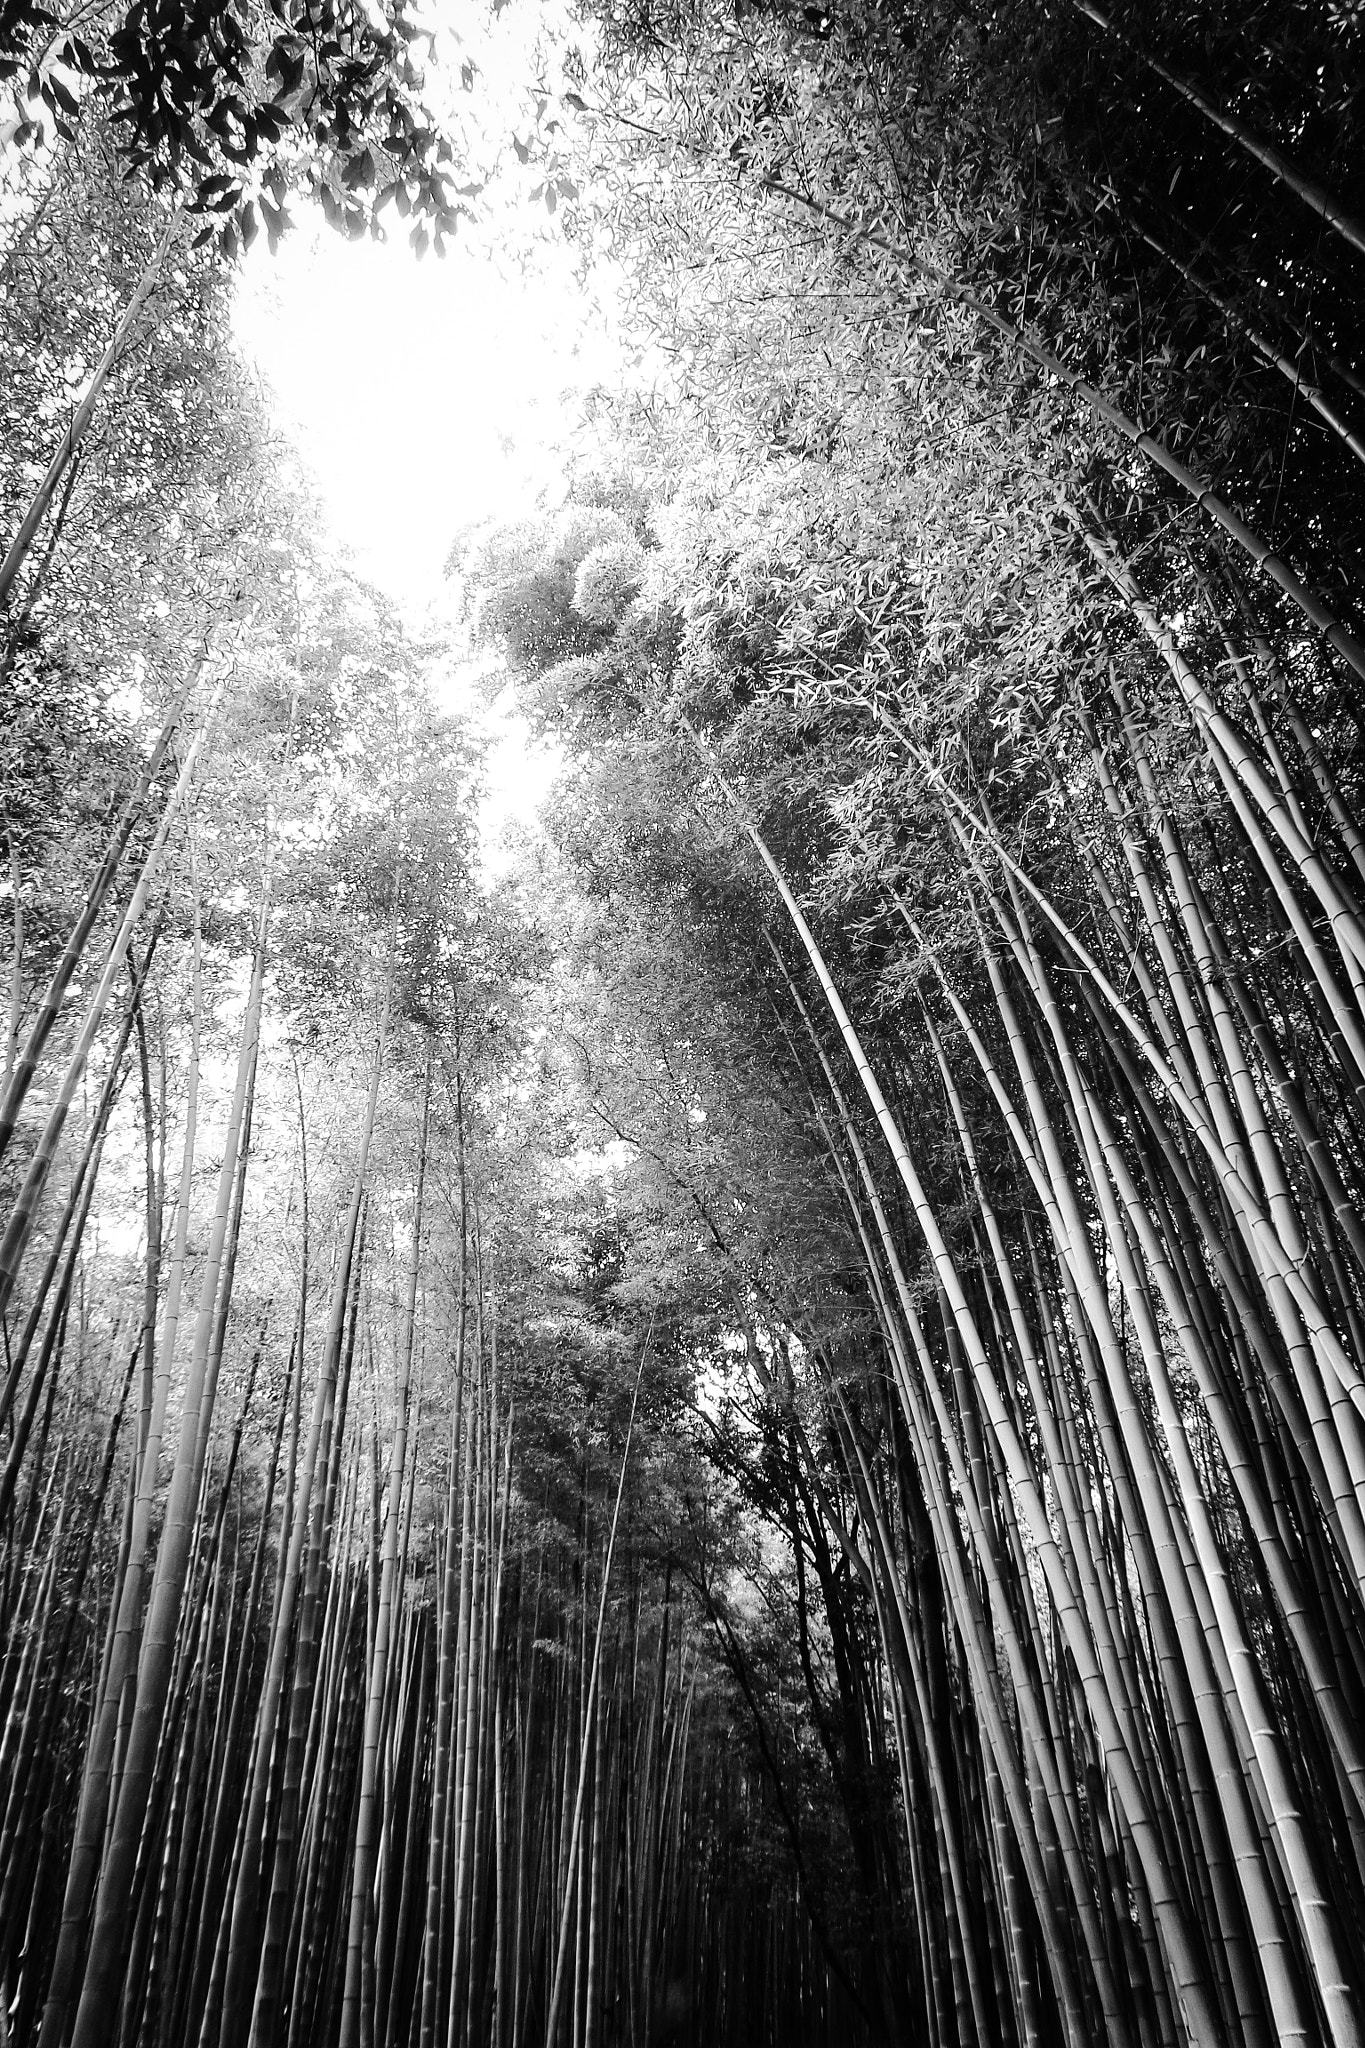 Samsung WB800F sample photo. Bamboo, nara photography